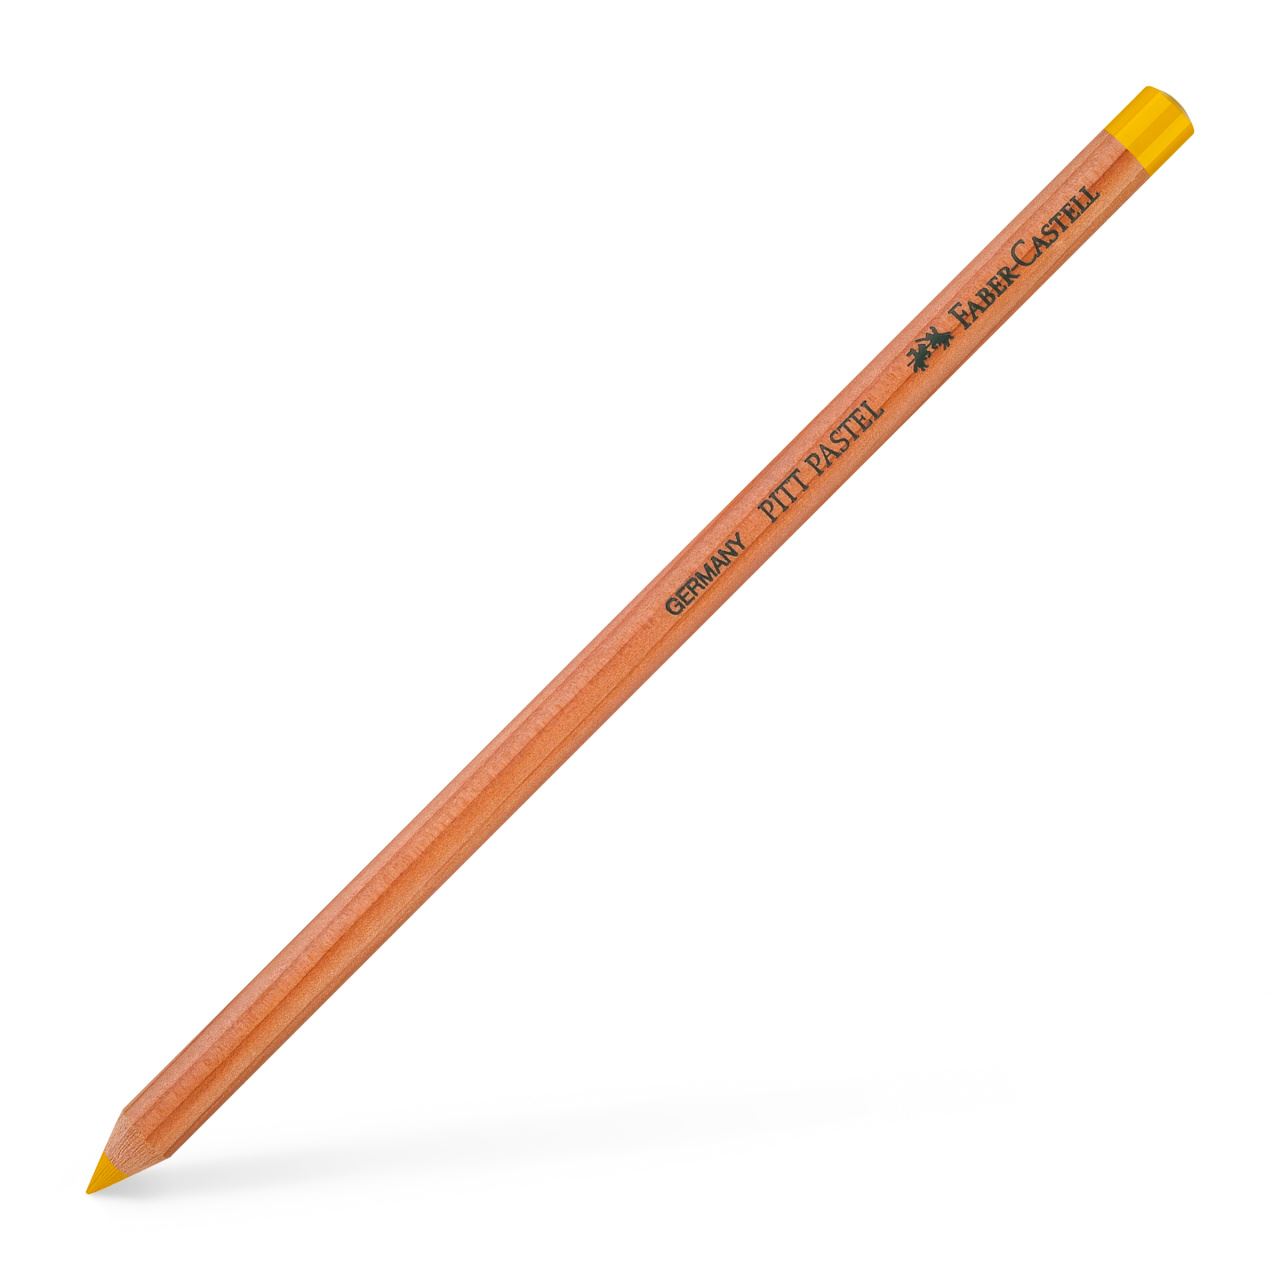 Faber-Castell - Pitt Pastel pencil, dark Naples ochre